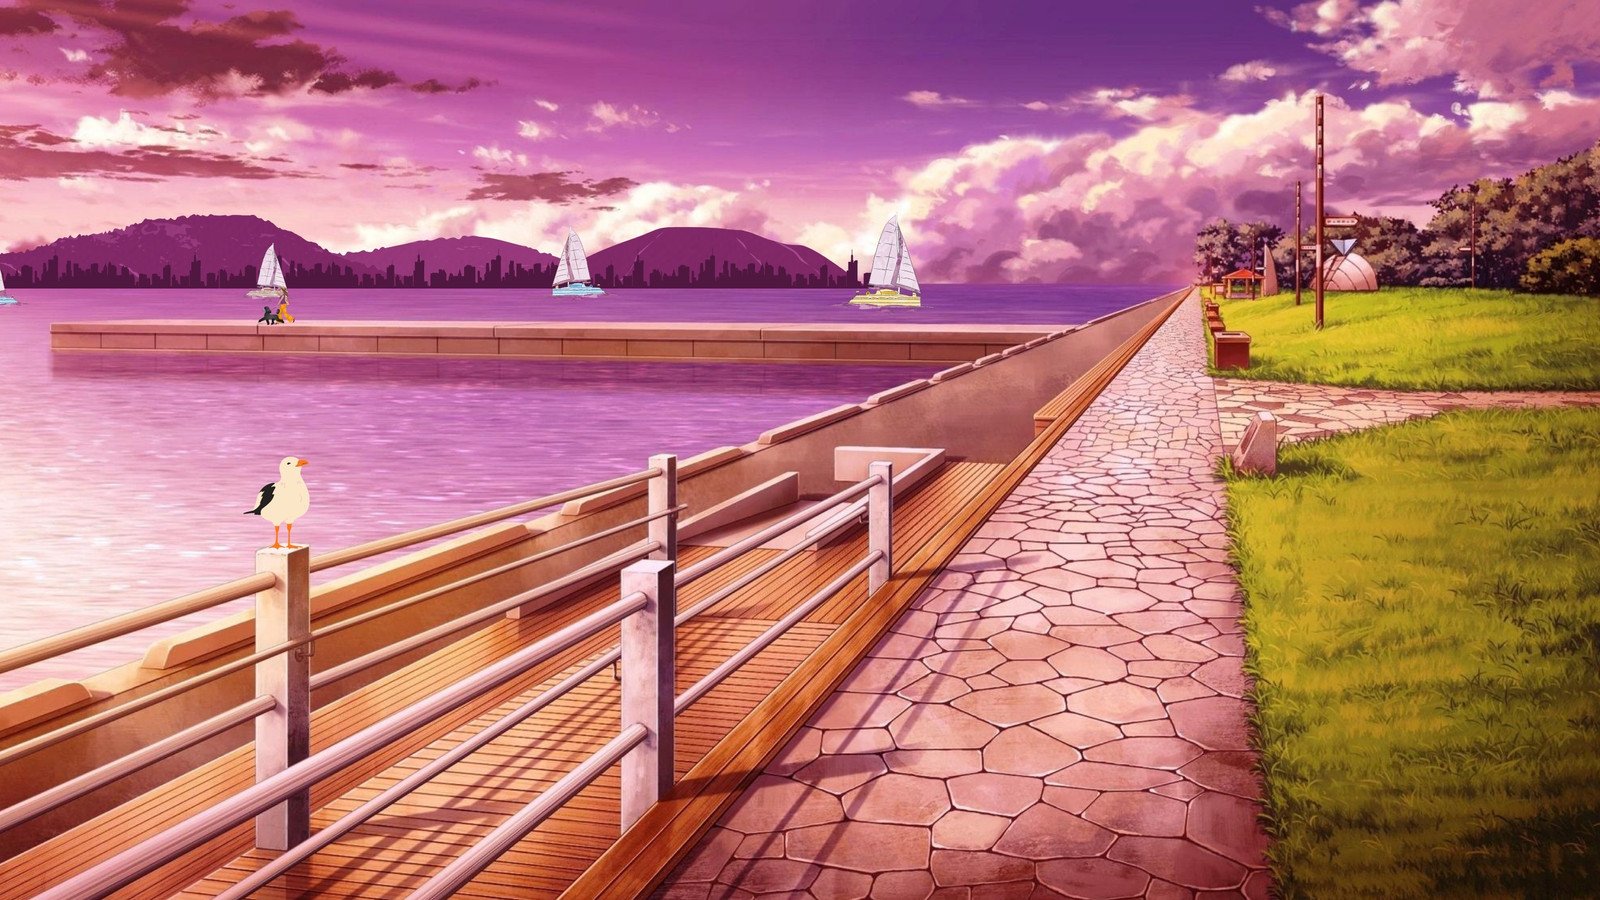 Anime Scenery, ultra landscape anime HD wallpaper | Pxfuel